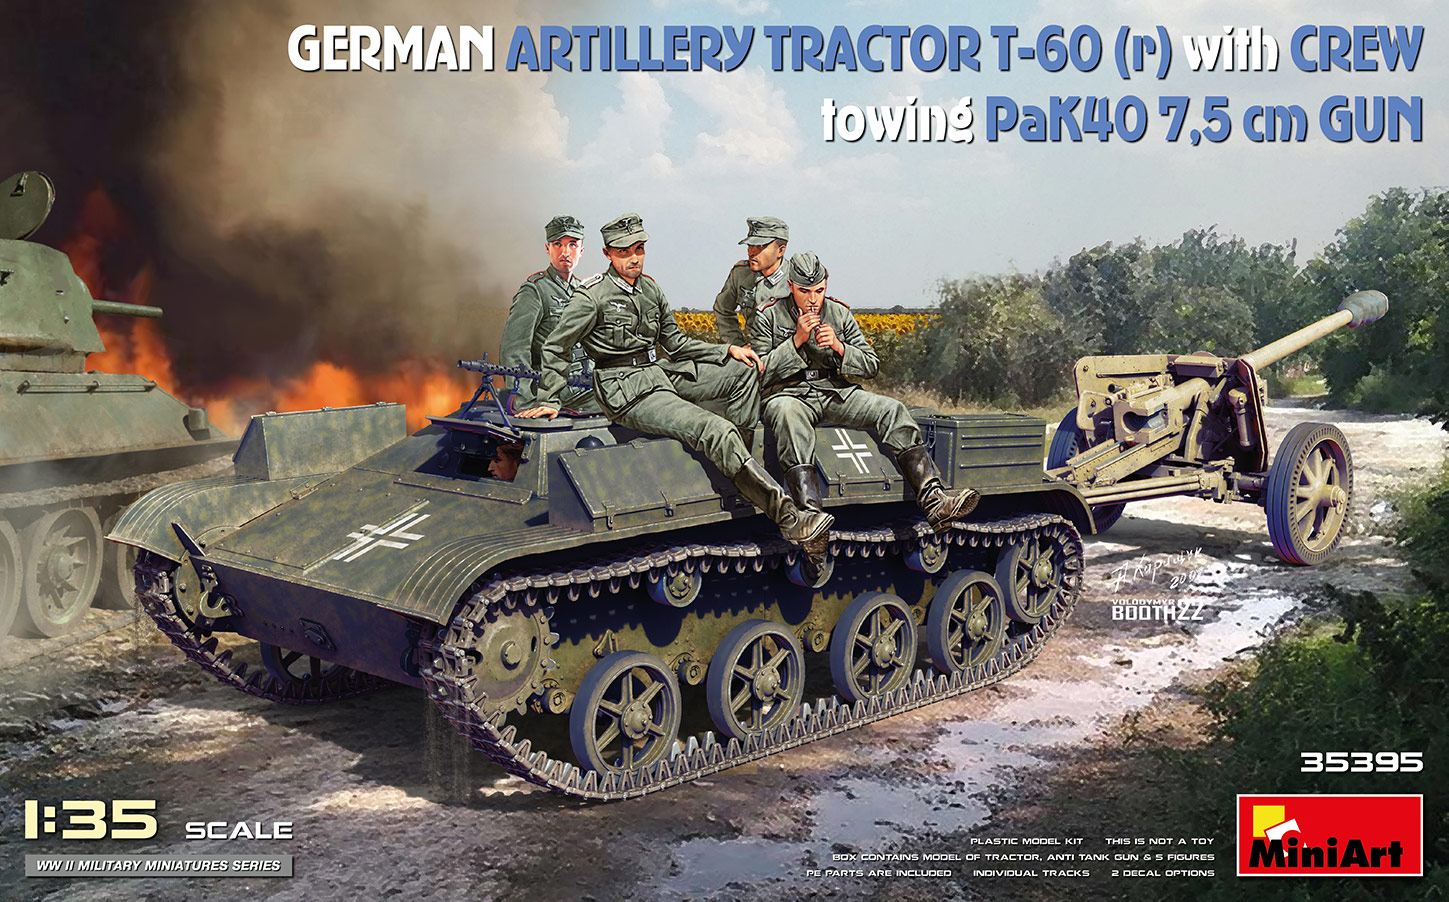 1/35　ドイツ砲兵トラクター T-60 (r) w/PaK40 対戦車砲&クルーフィギュア5体